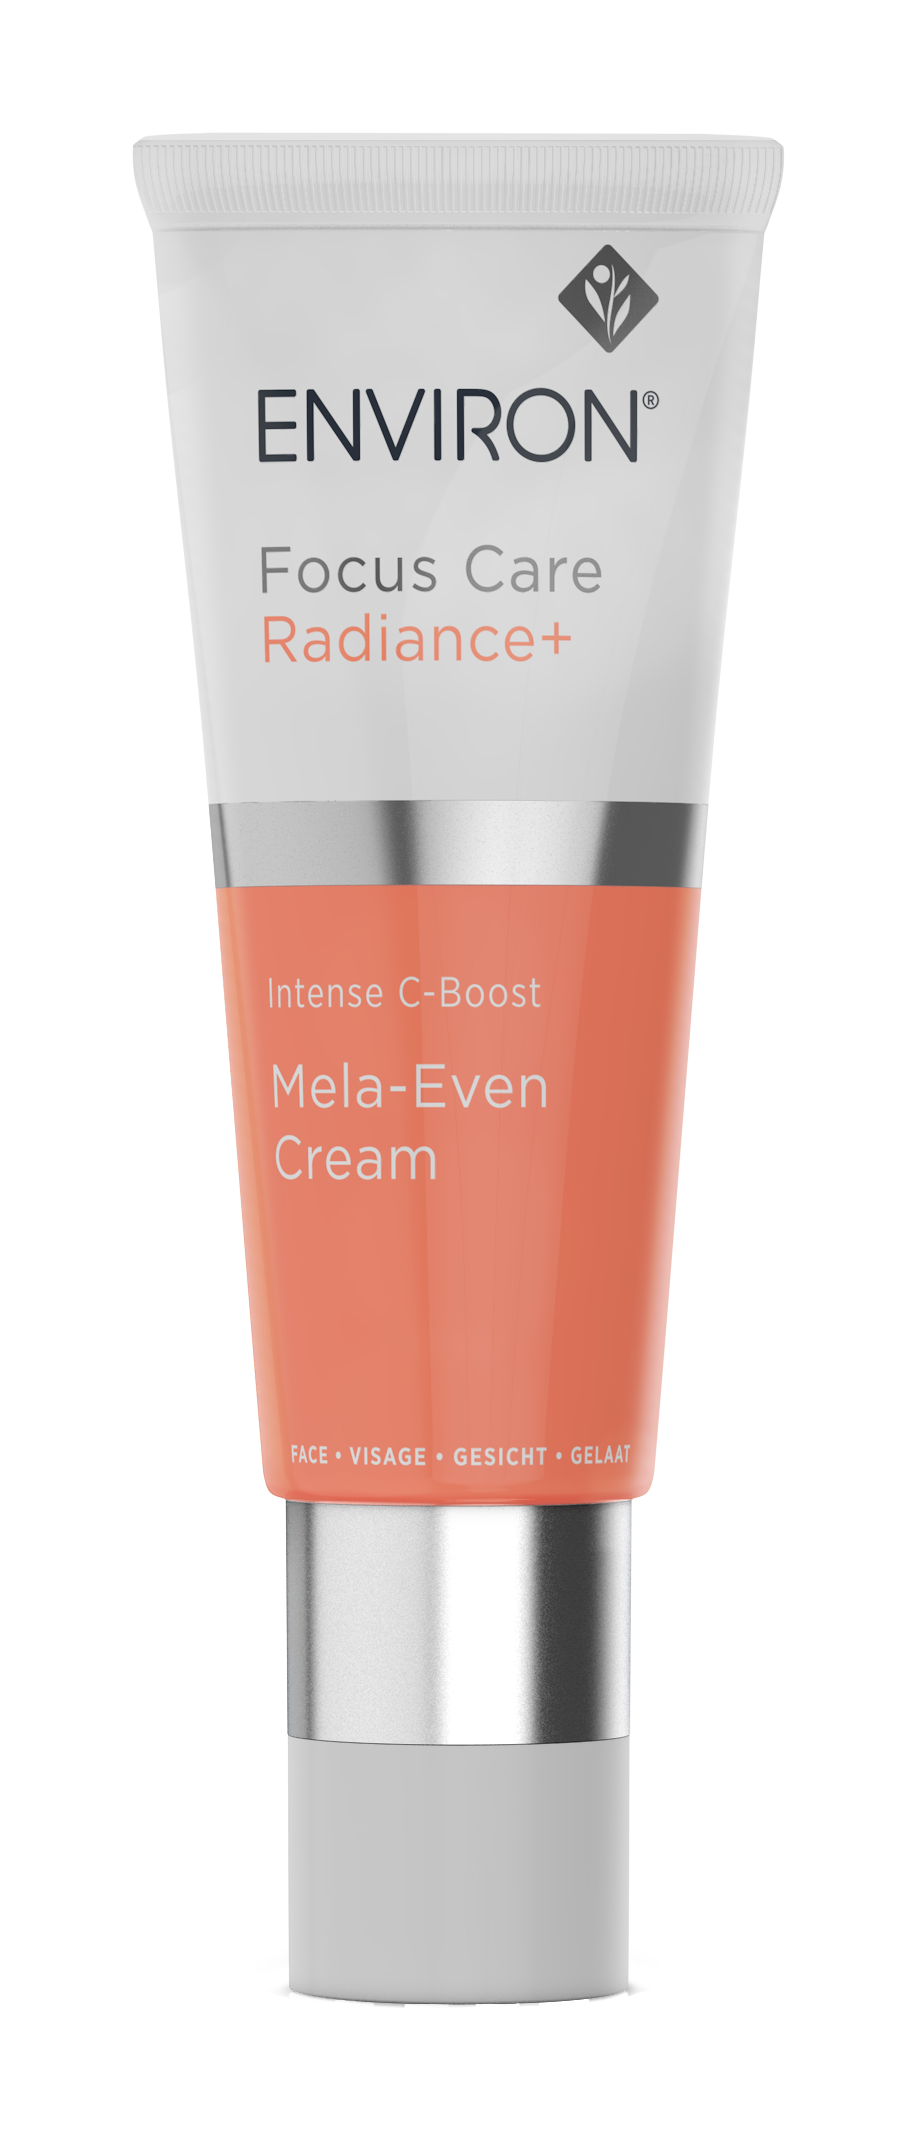 Focus Care Radiance+ Mela-Even Cream